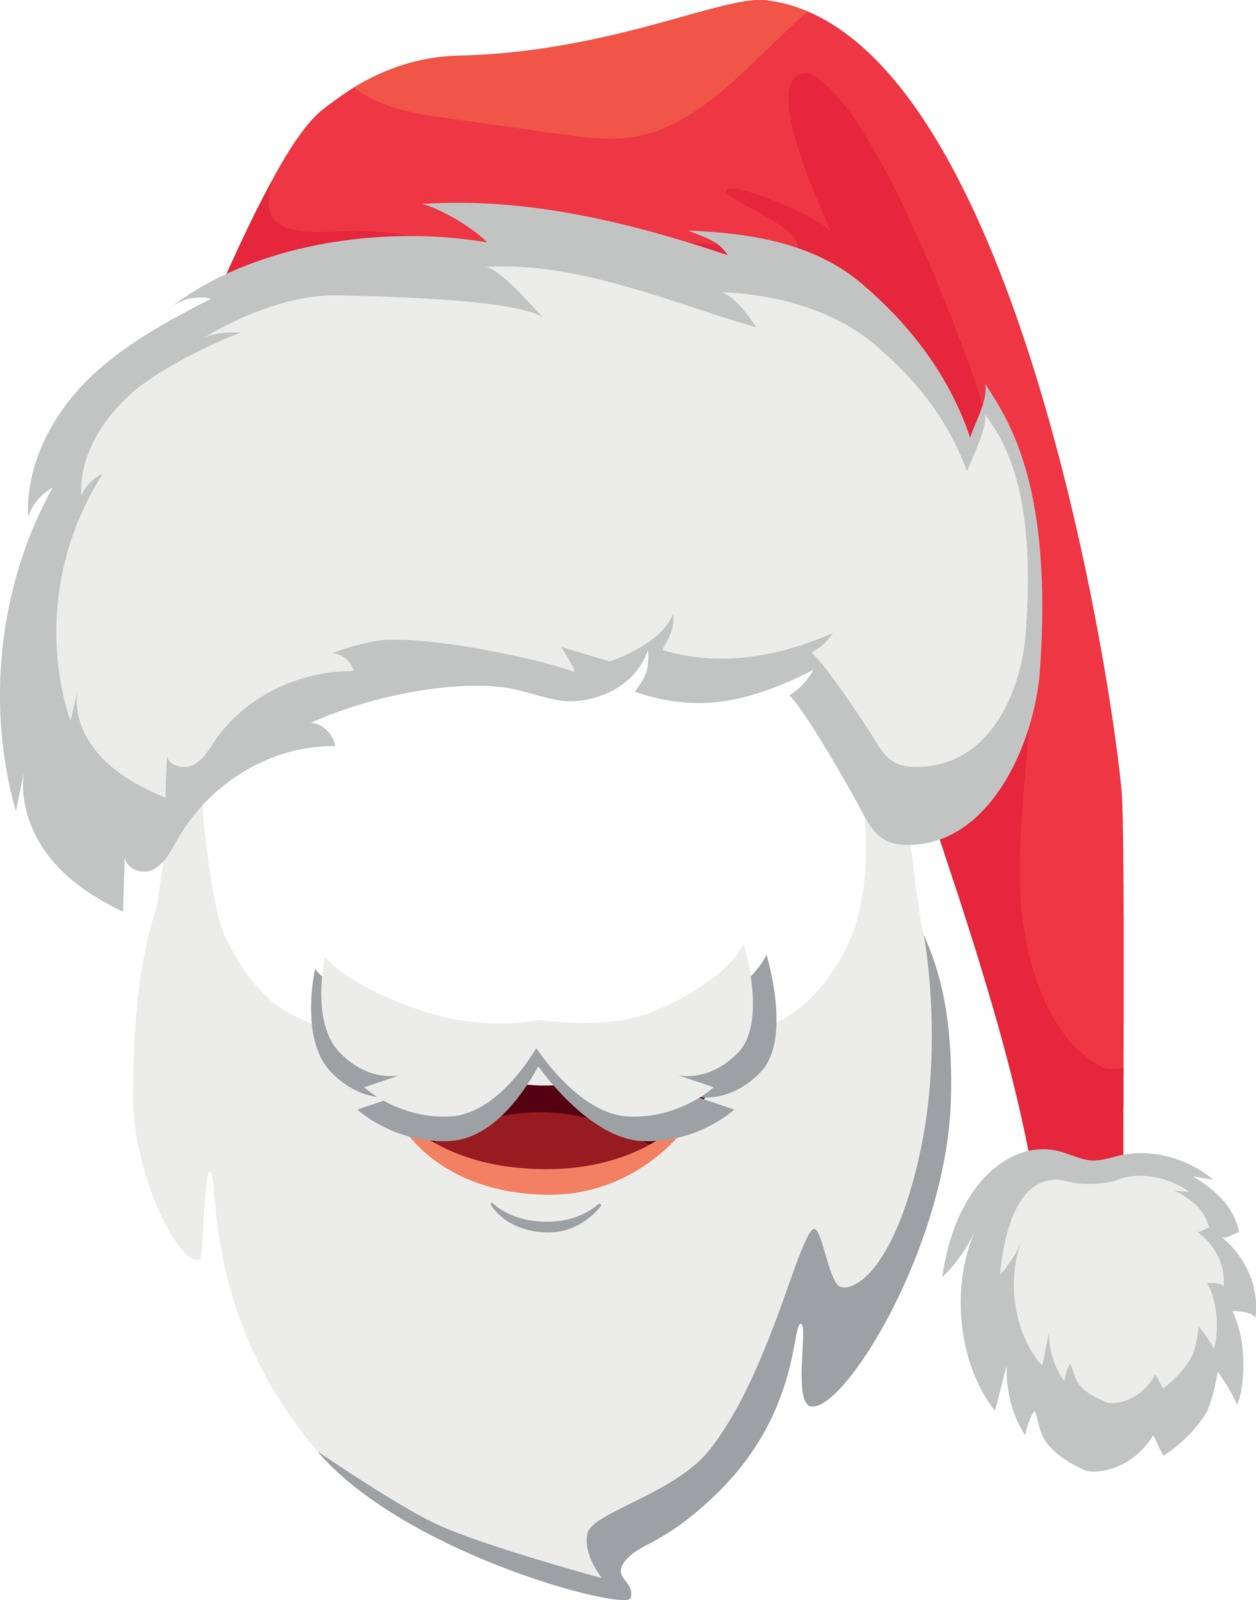 Santa Claus hat and beard. Santa Claus vector illustration